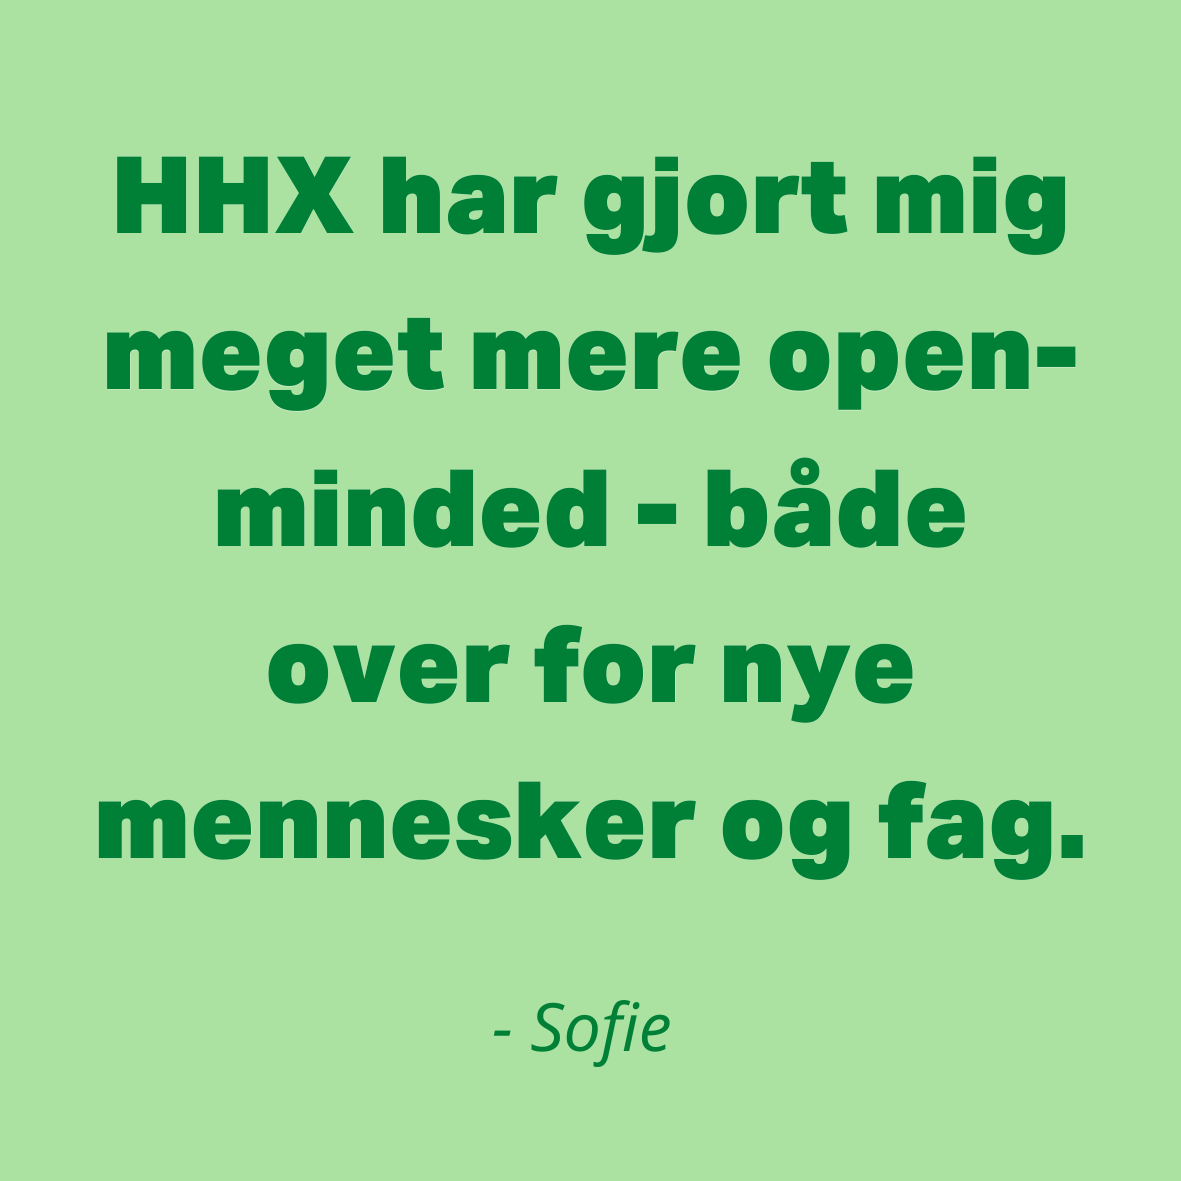 HHX citat 1